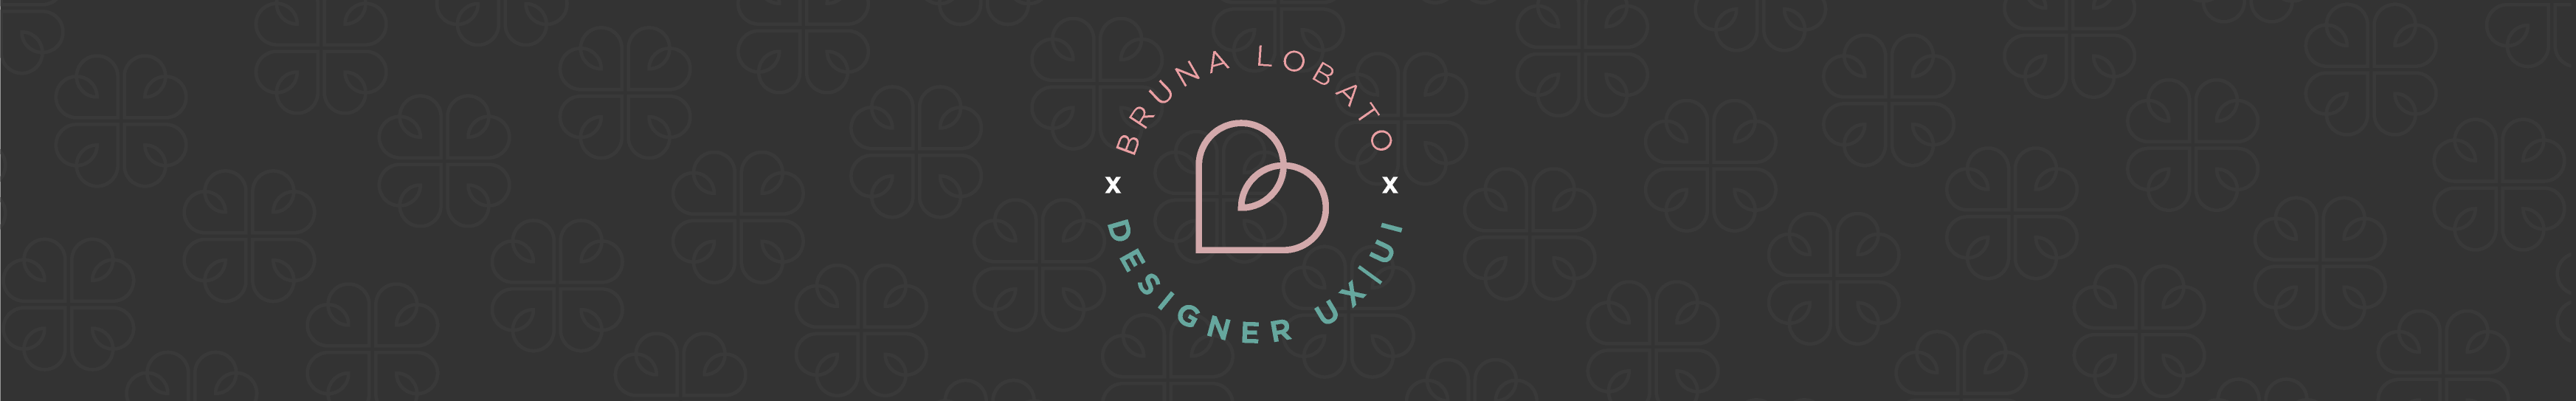 Bruna Lobato's profile banner